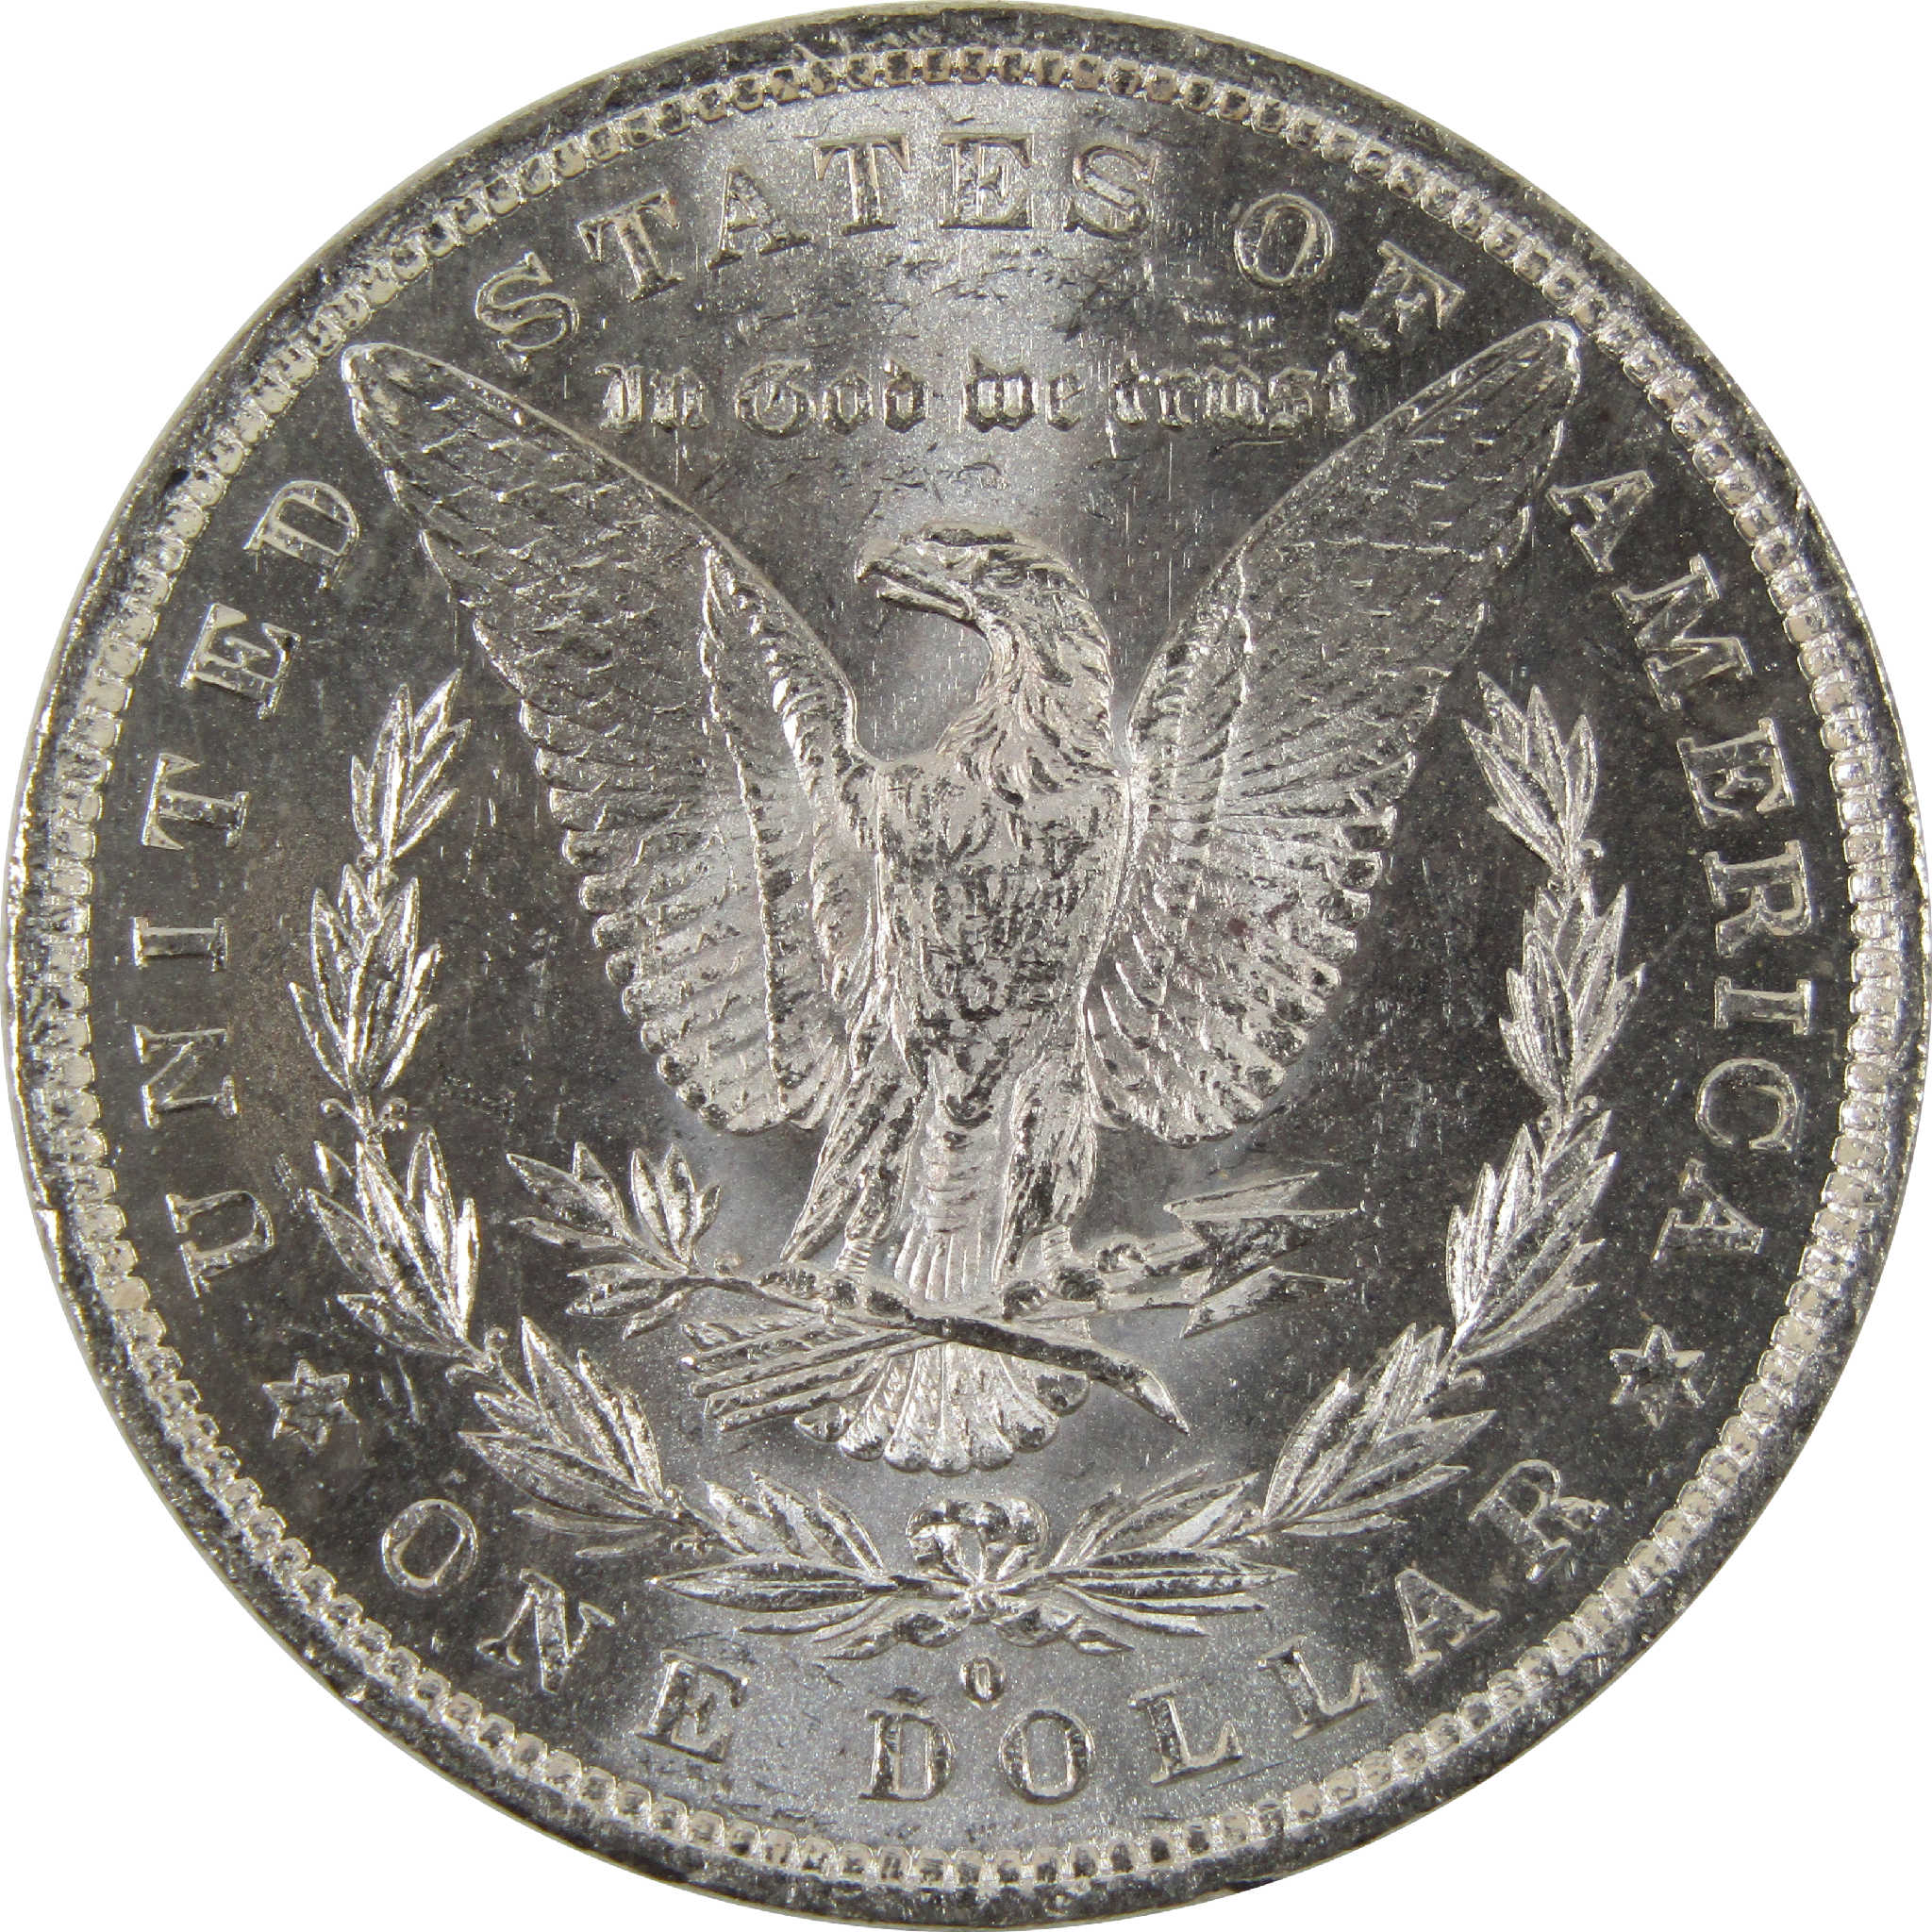 1882 O Morgan Dollar BU Uncirculated 90% Silver $1 Coin SKU:I8899 - Morgan coin - Morgan silver dollar - Morgan silver dollar for sale - Profile Coins &amp; Collectibles